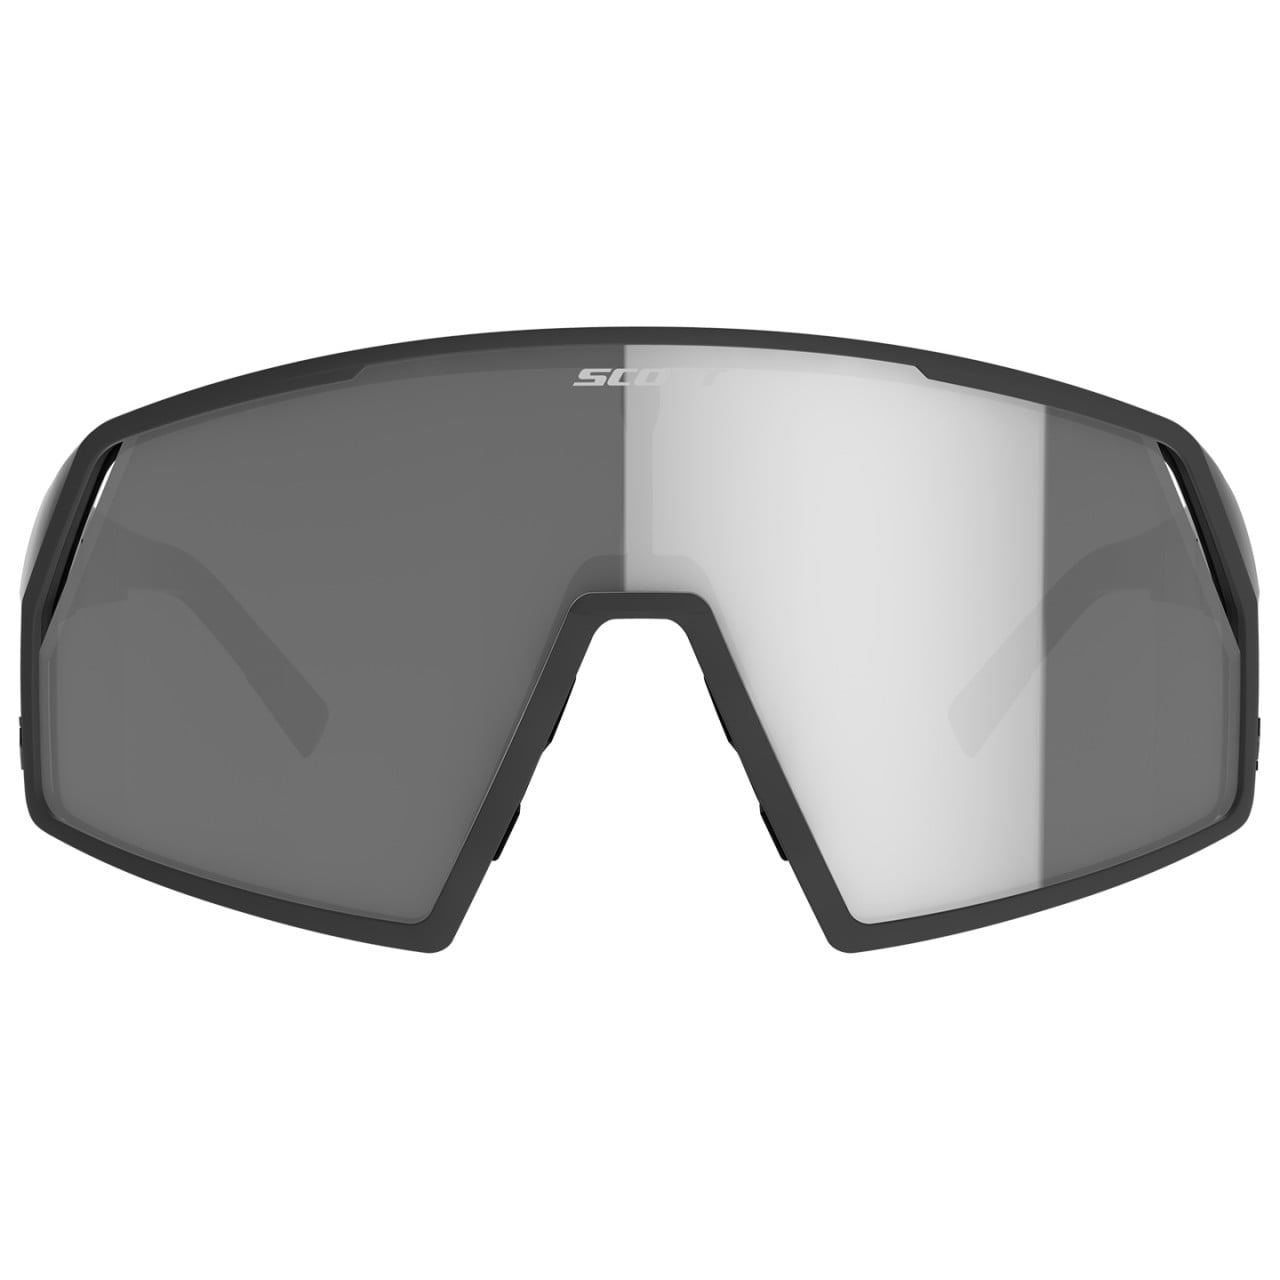 Gafas Pro Shield Light Sensitive